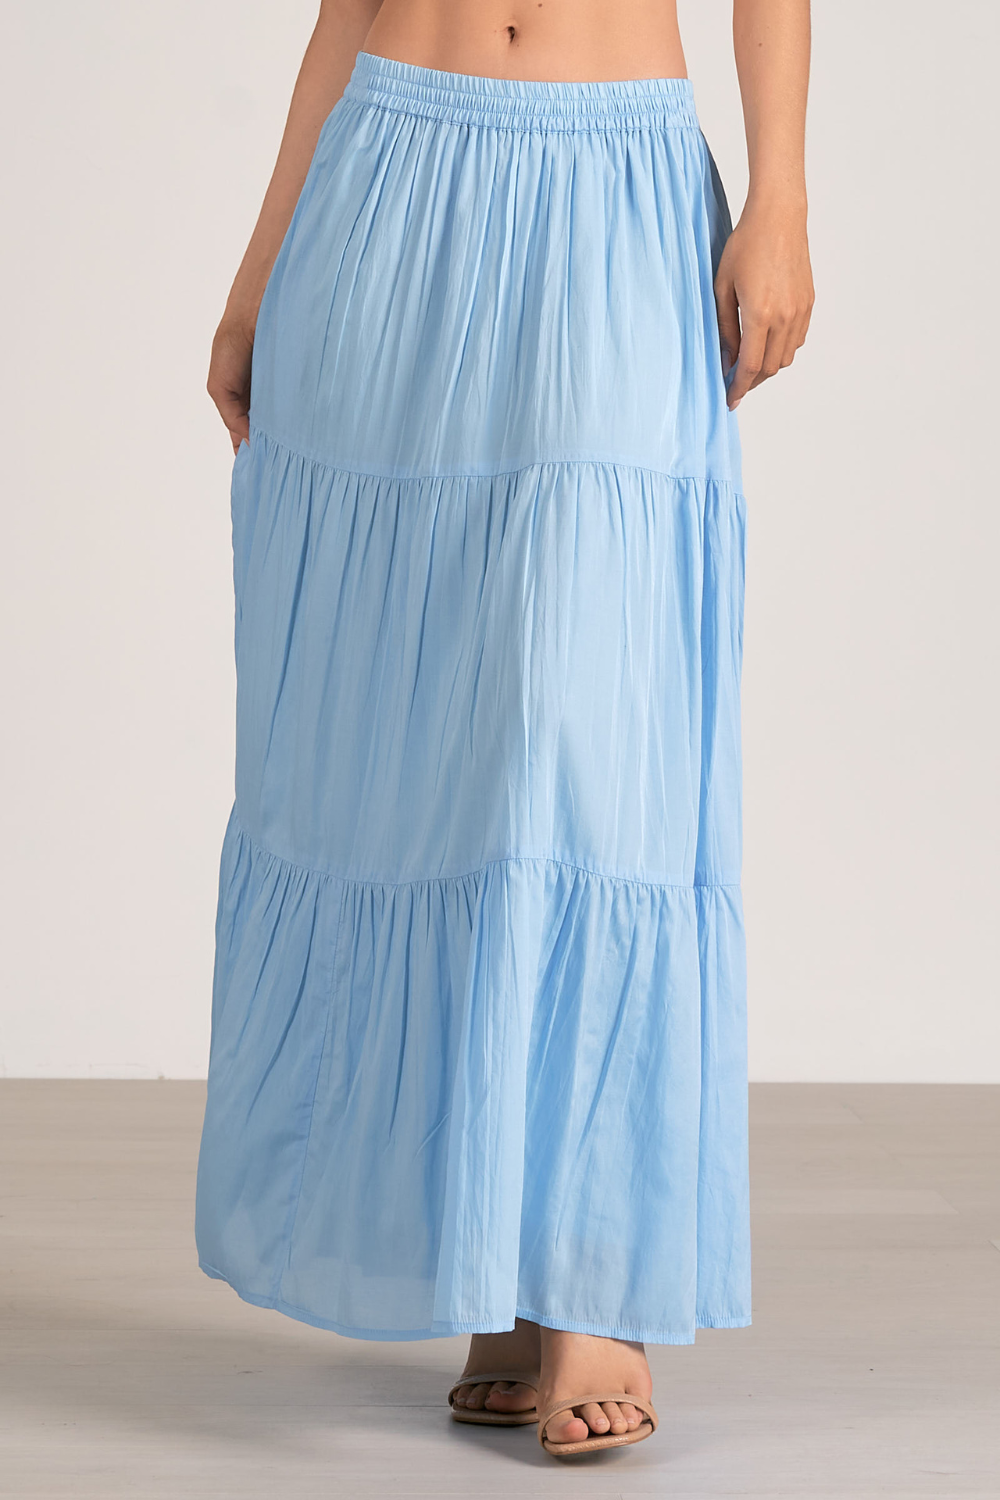 Elan Evangeline Maxi Skirt - Blue